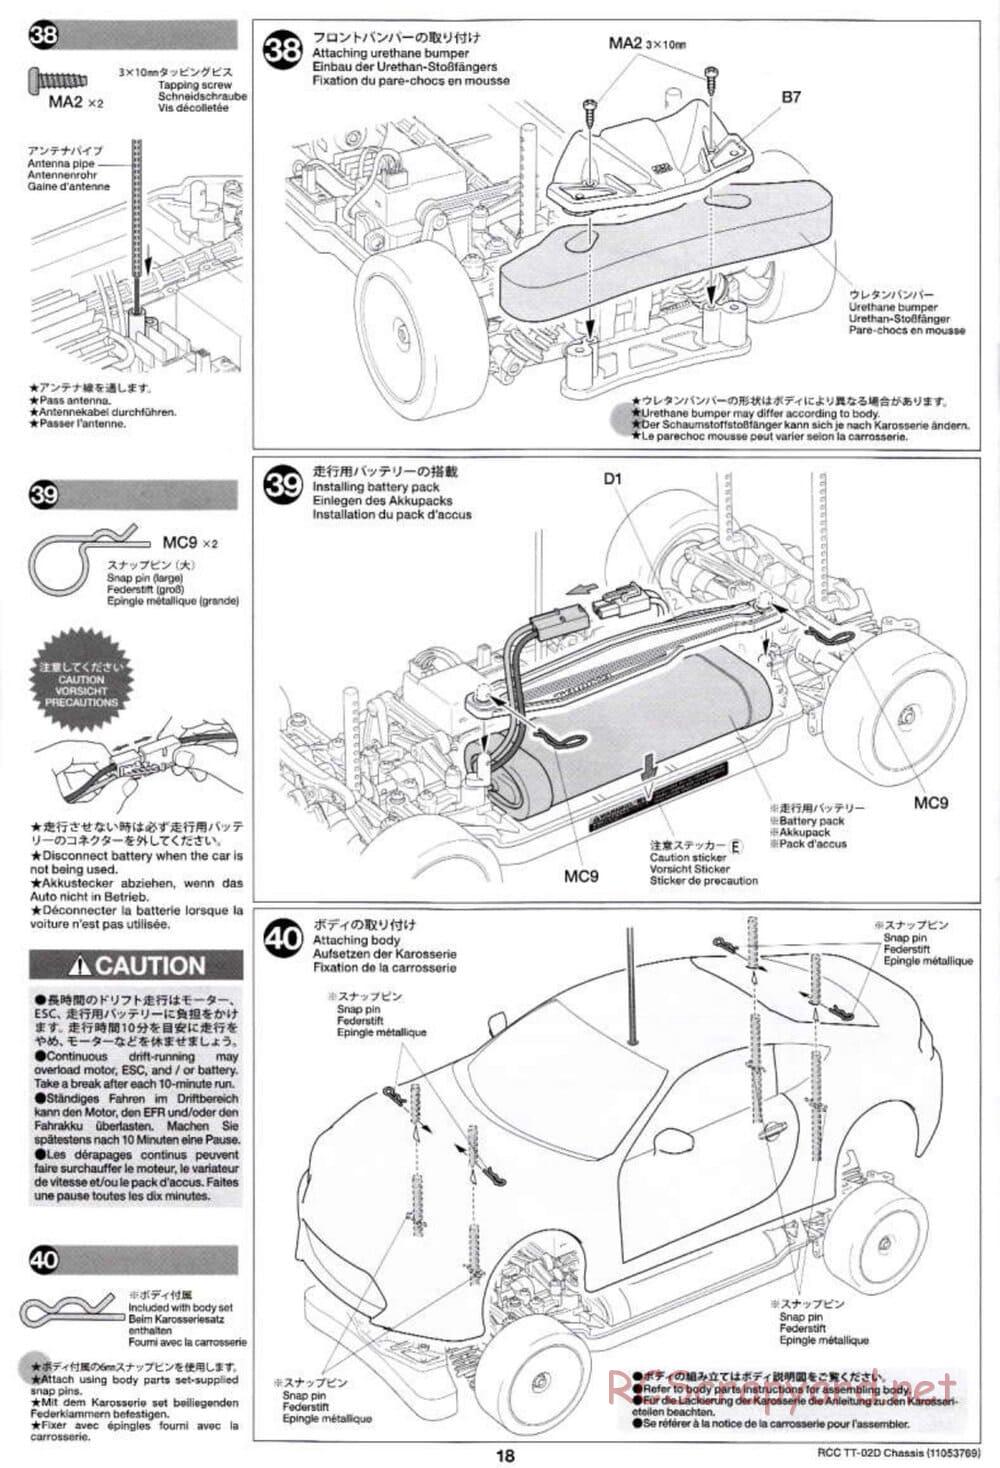 Tamiya - TT-02D Chassis - Manual - Page 18